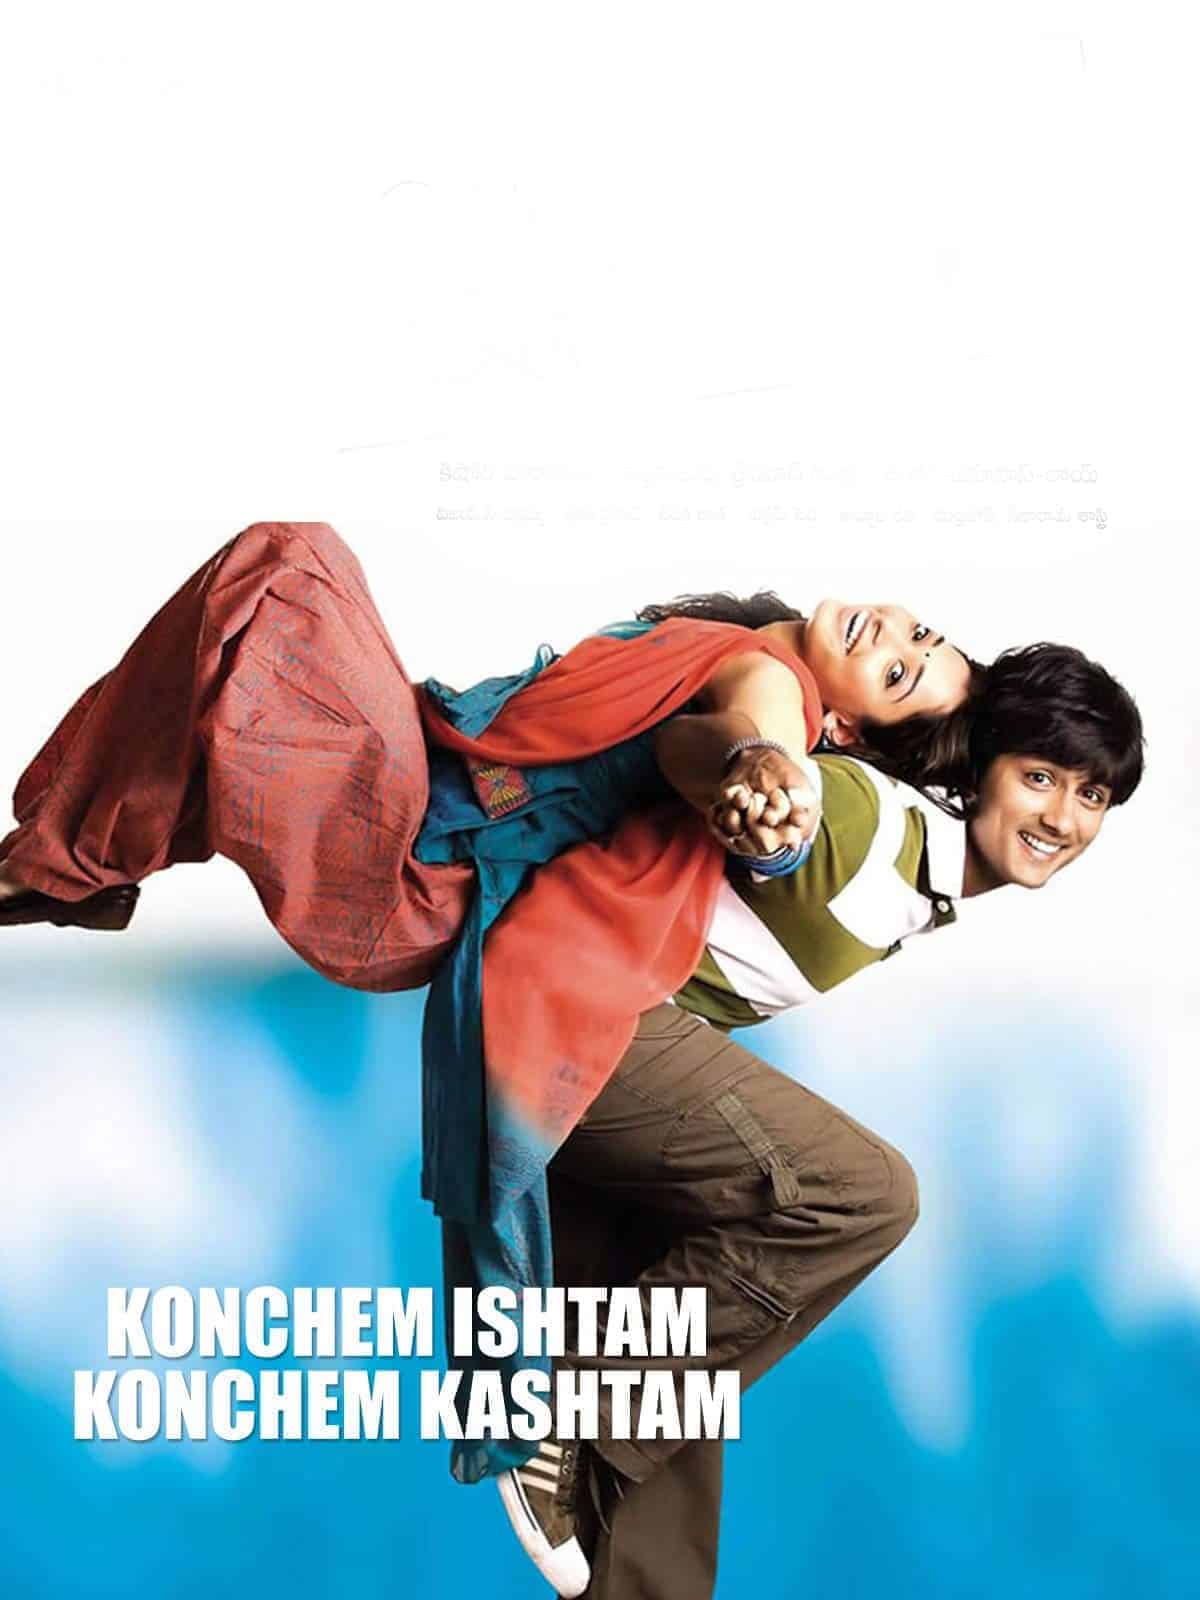 Konchem Ishtam Konchem Kashtam 2009 Tamil Romance Movie Online